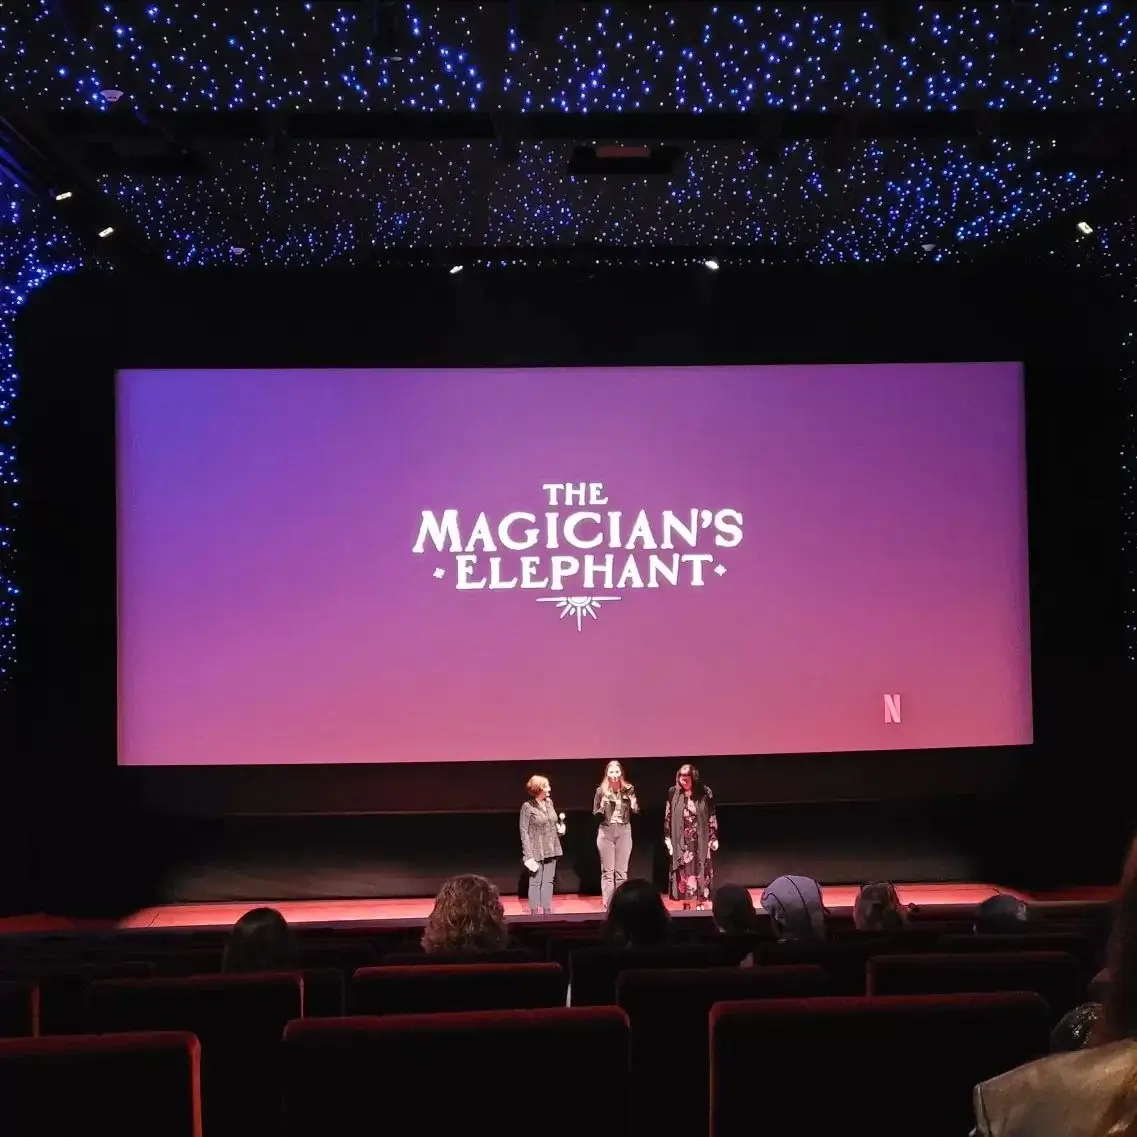 estreno the magicians elephant netflix pelicula animada todo lo que sabemos hasta ahora